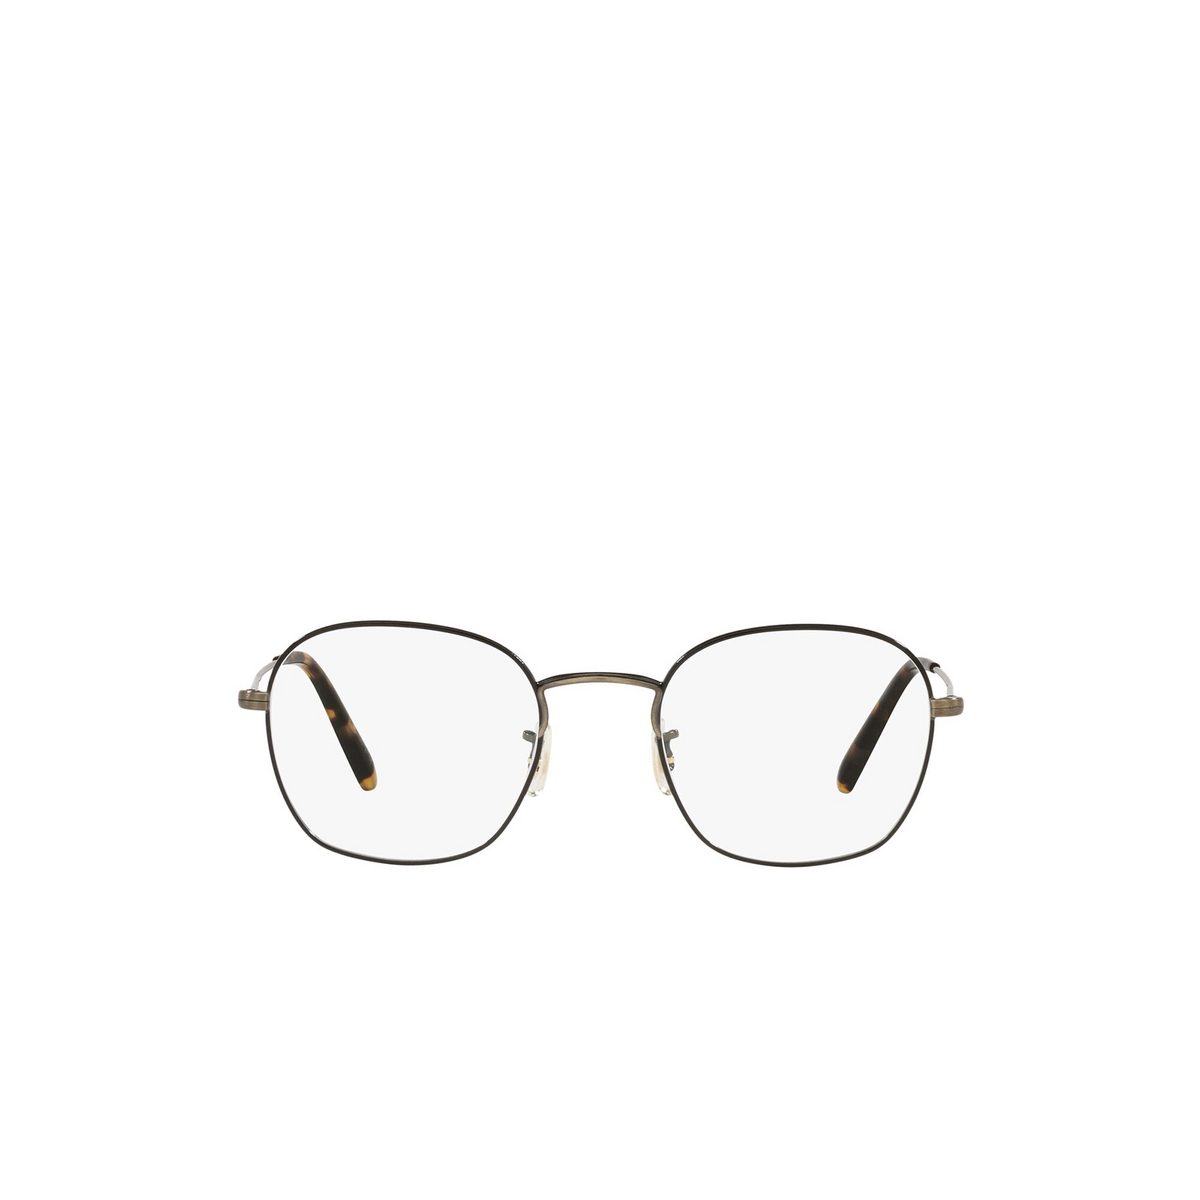 Oliver Peoples ALLINGER Eyeglasses 5317 Antique Gold / Black - front view